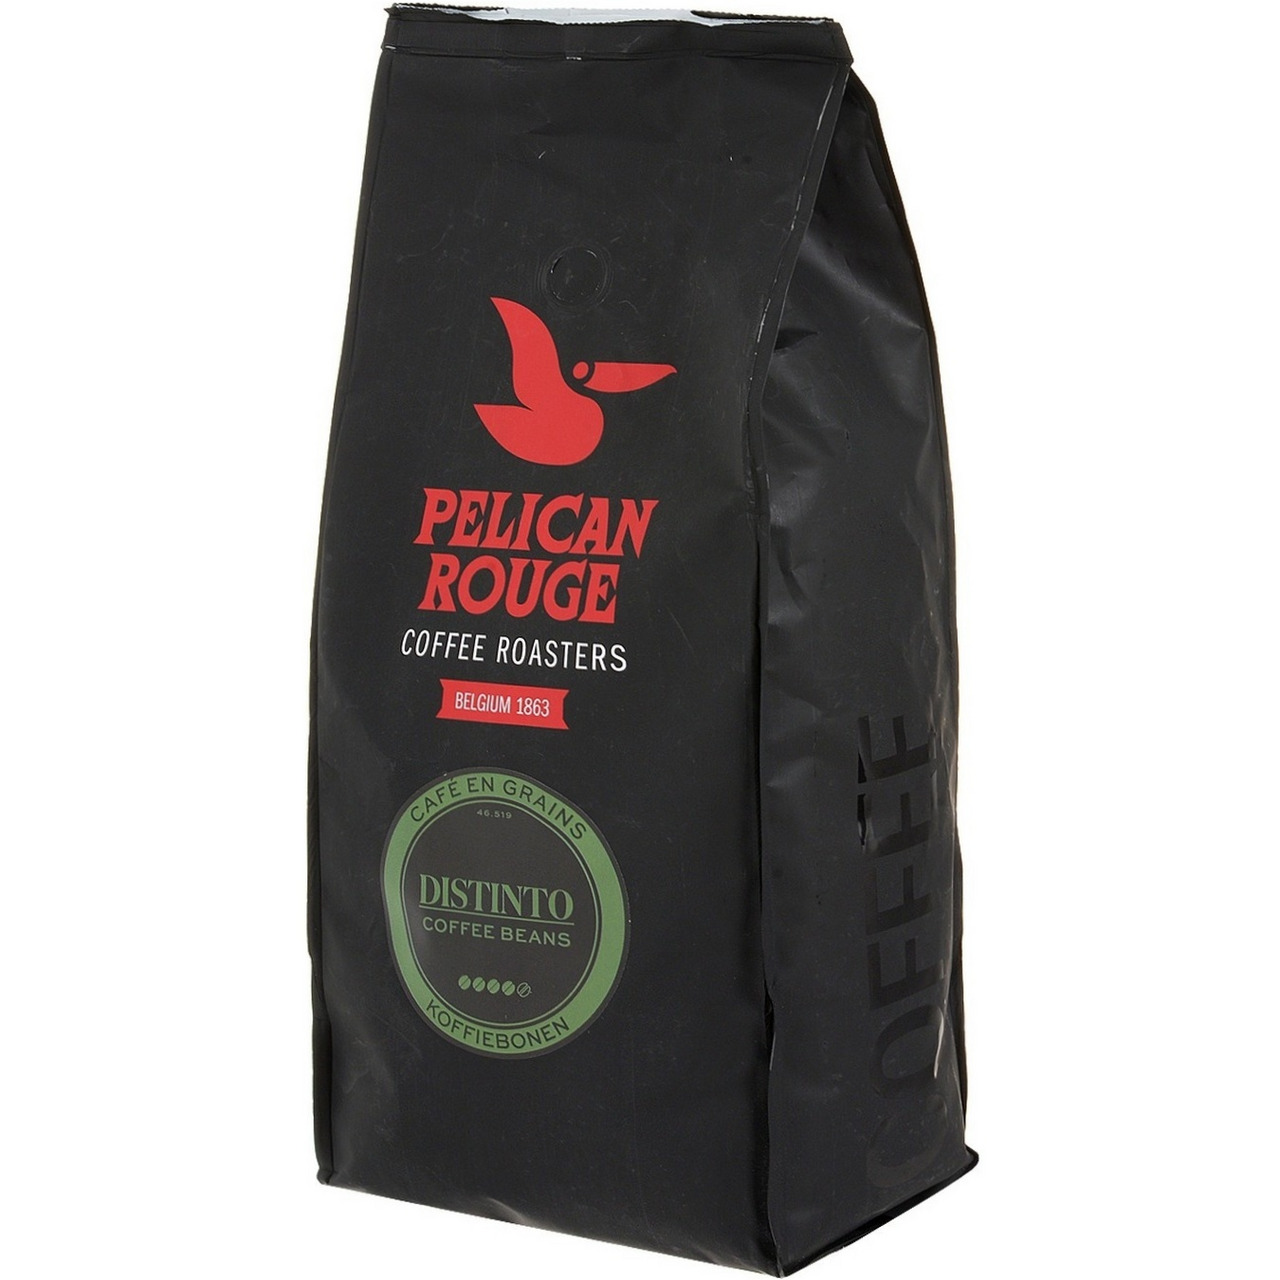 Кофе 1 кг купить недорого. Pelican rouge кофе в зернах. Кофе в зернах Pelican rouge distinto. Кофе в зернах Pelican rouge "distinto" 1 кг. Кофе в зернах Pelican rouge Orfeo.